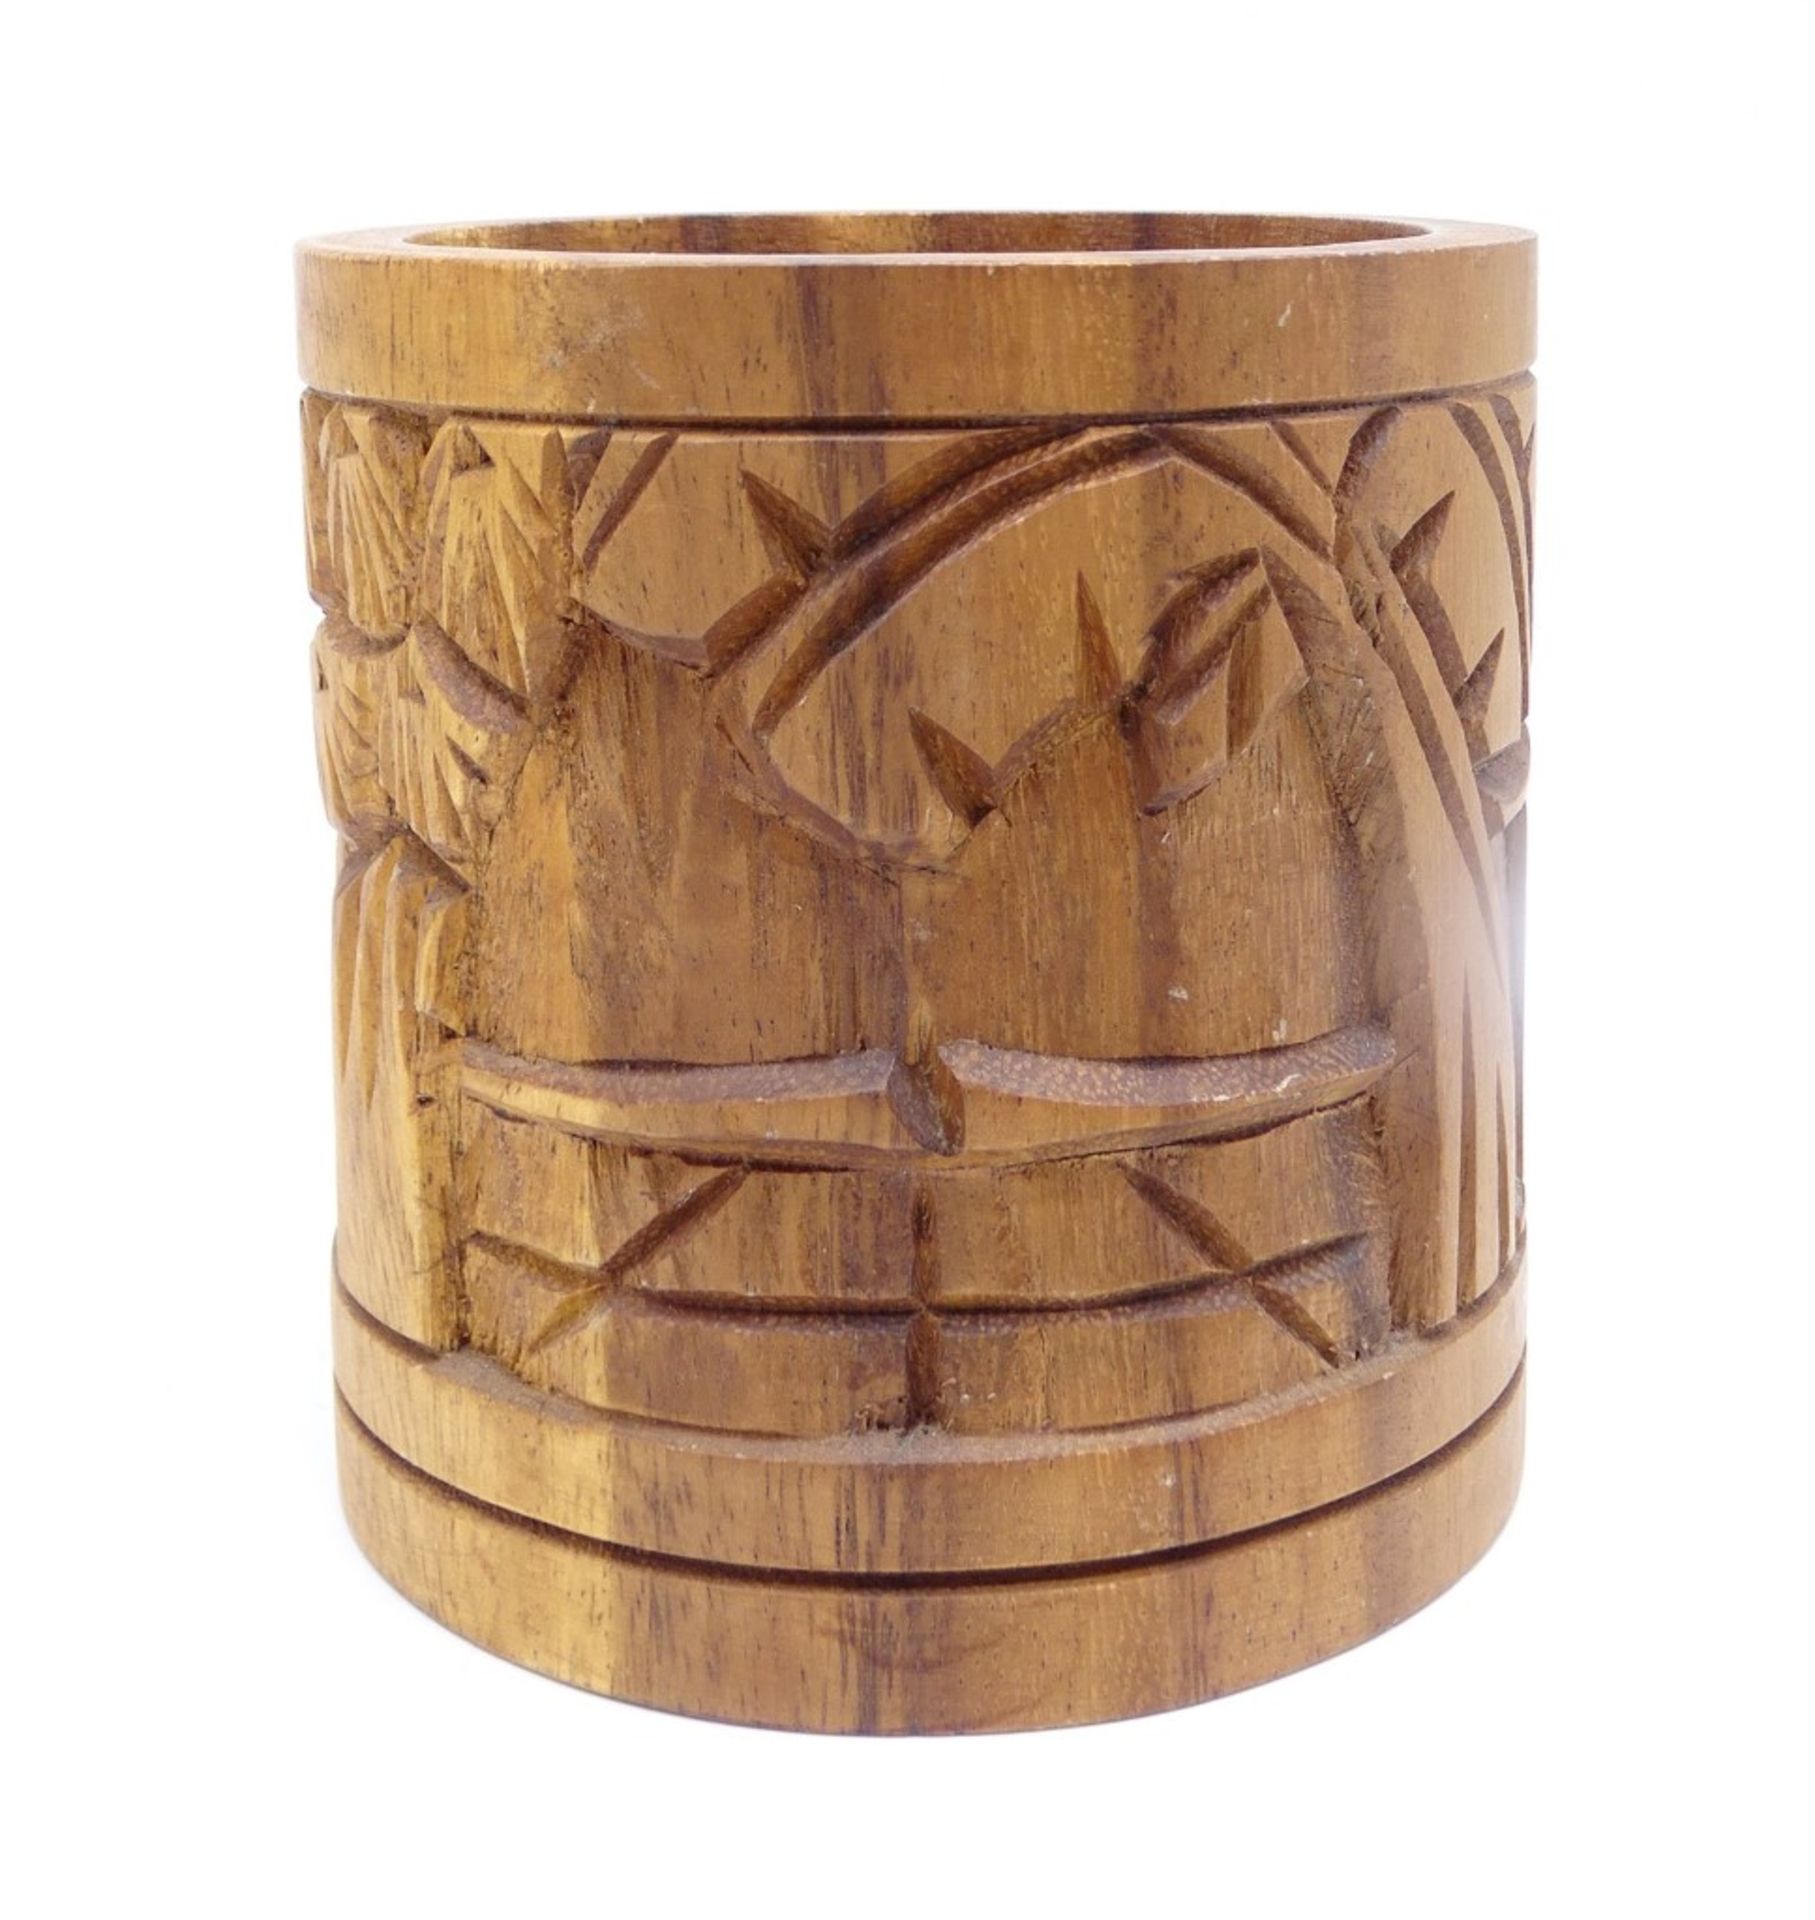 Holzdose mit geschnitzten Palmen- und Hüttenmotiven, H. 13 cm, leichte Altersspuren - Bild 3 aus 4